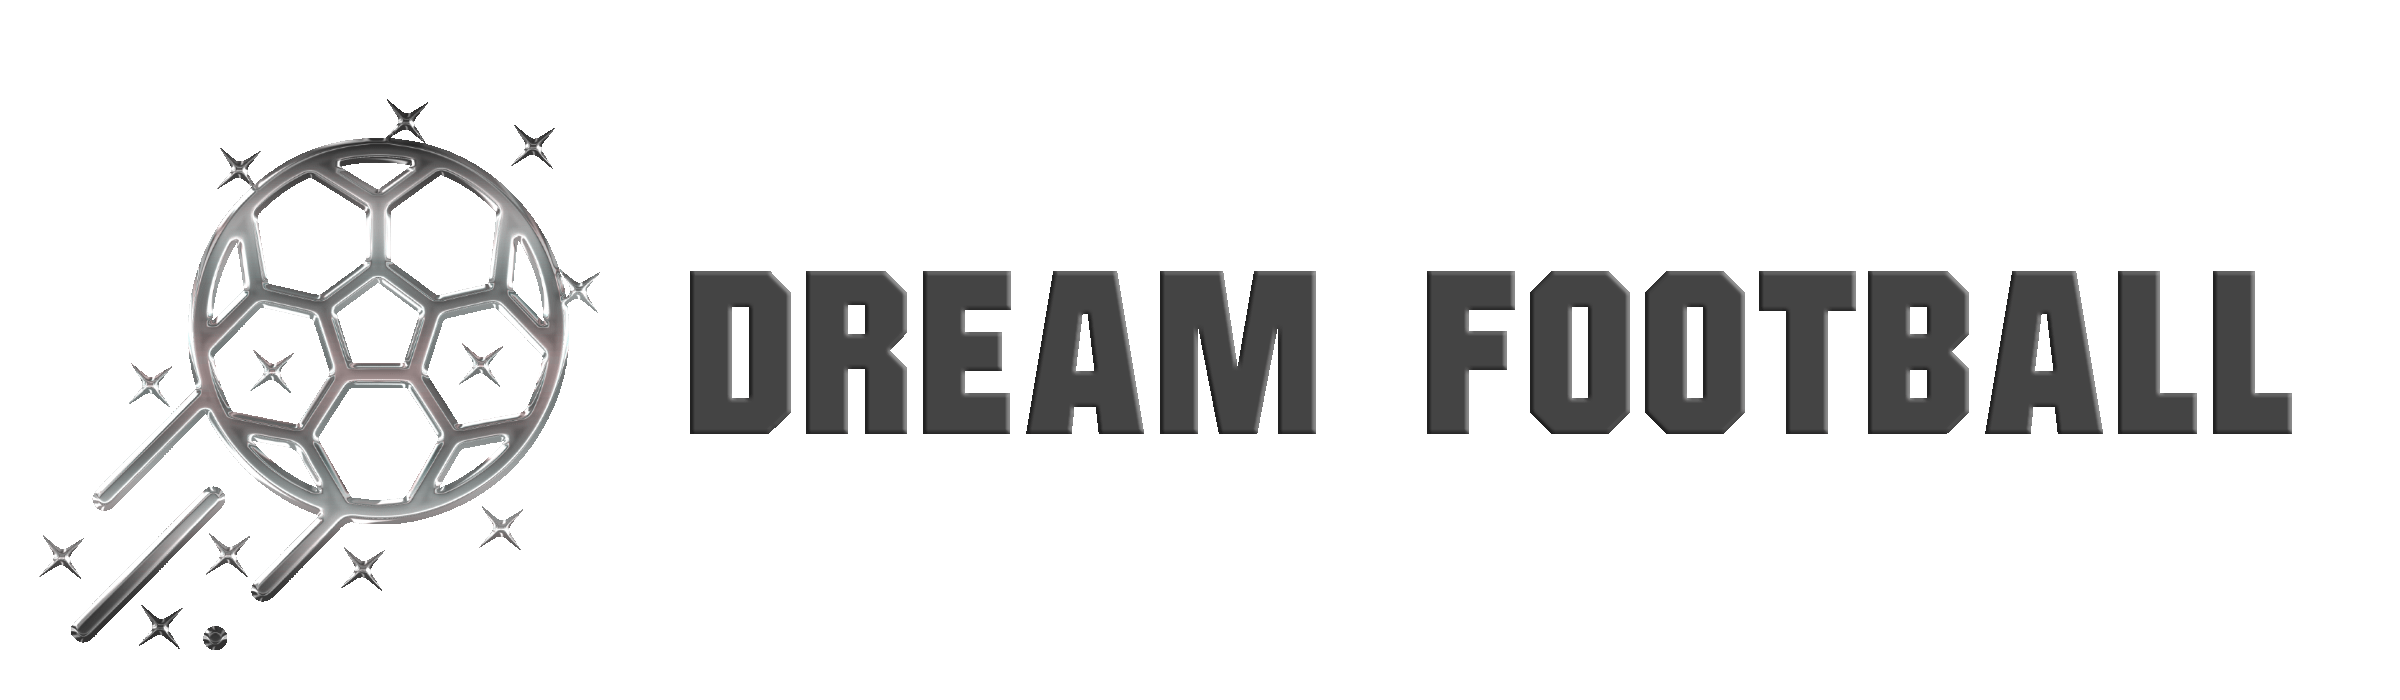 Dream-logo-5